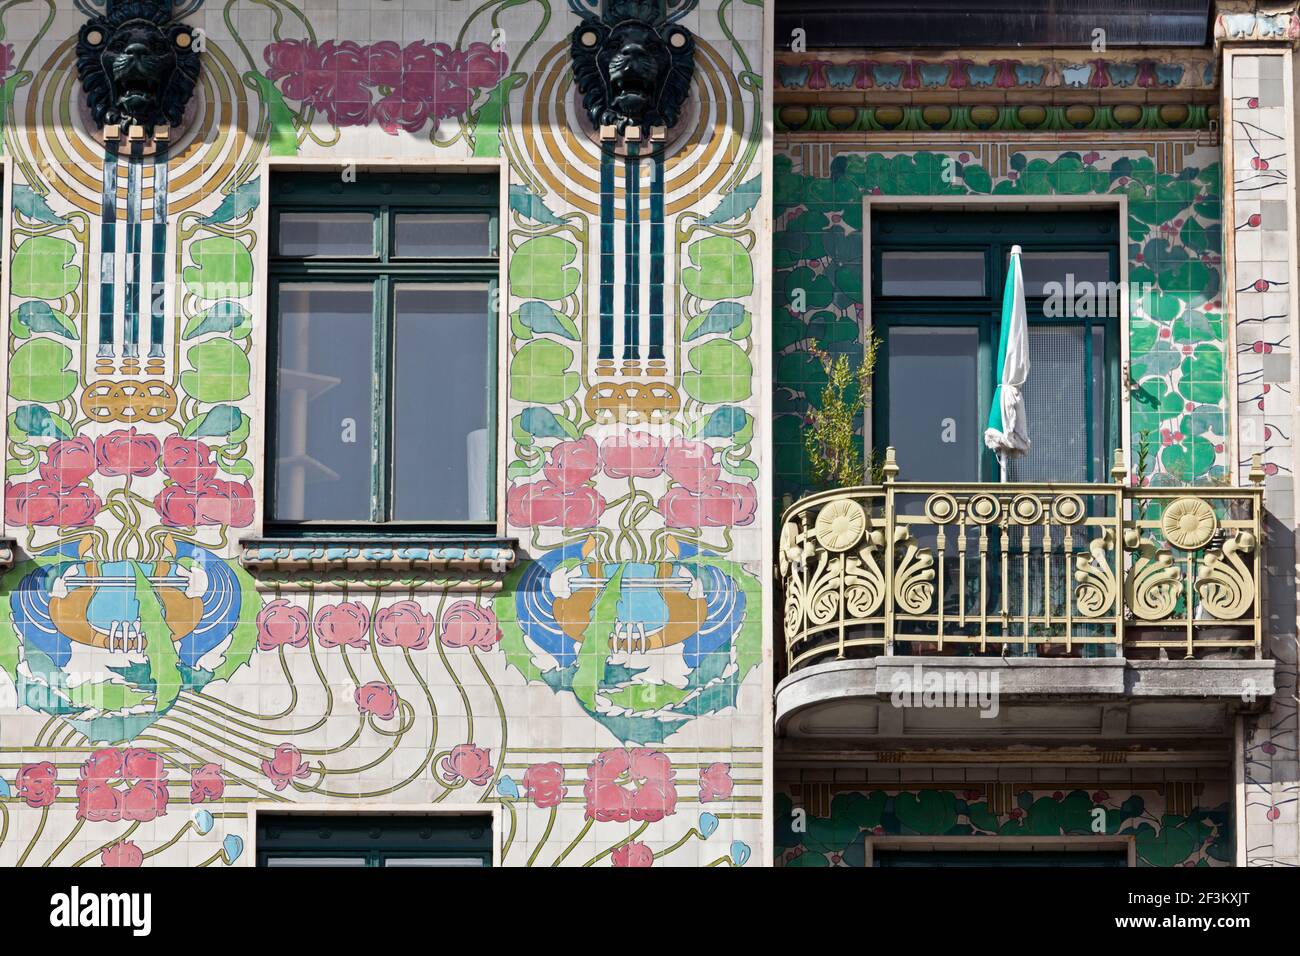 Façade d'une maison Jugendstil Majolikahaus (majolica) au n° 40 Linke Wienzeile, Vienne, Autriche. Conçu en 1898-99. Banque D'Images